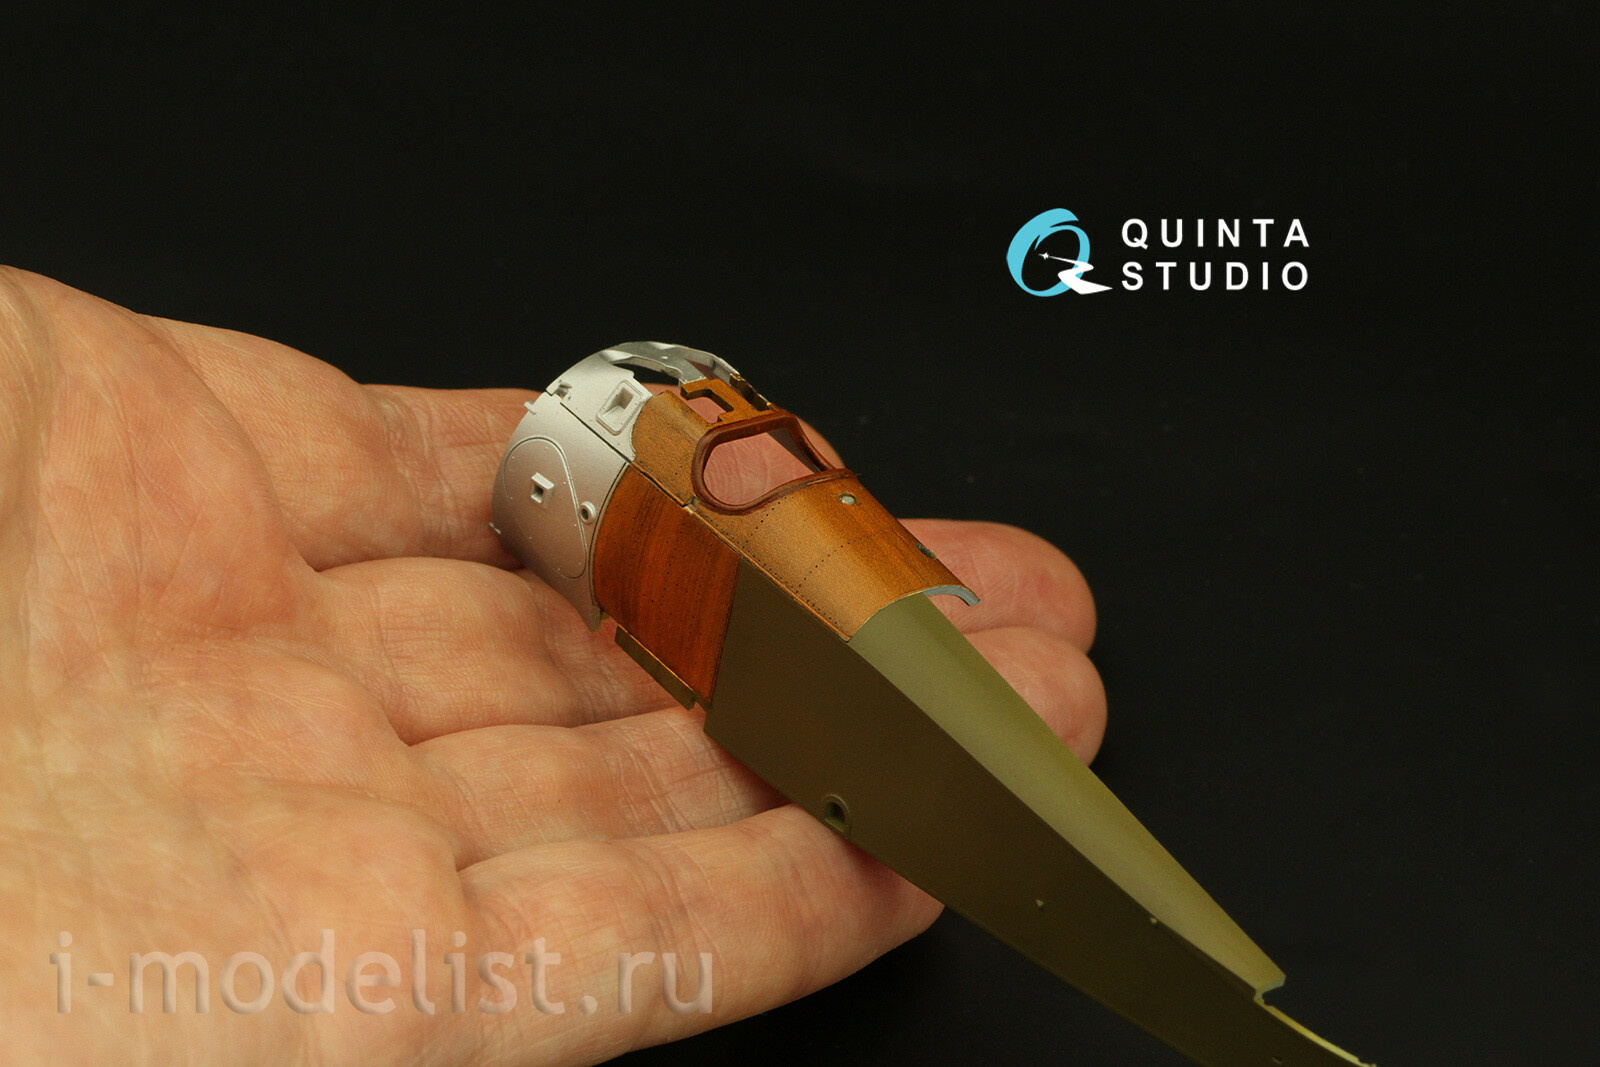 QL72005 Quinta Studio 1/72 Имитация древесины ореха (для любых моделей)